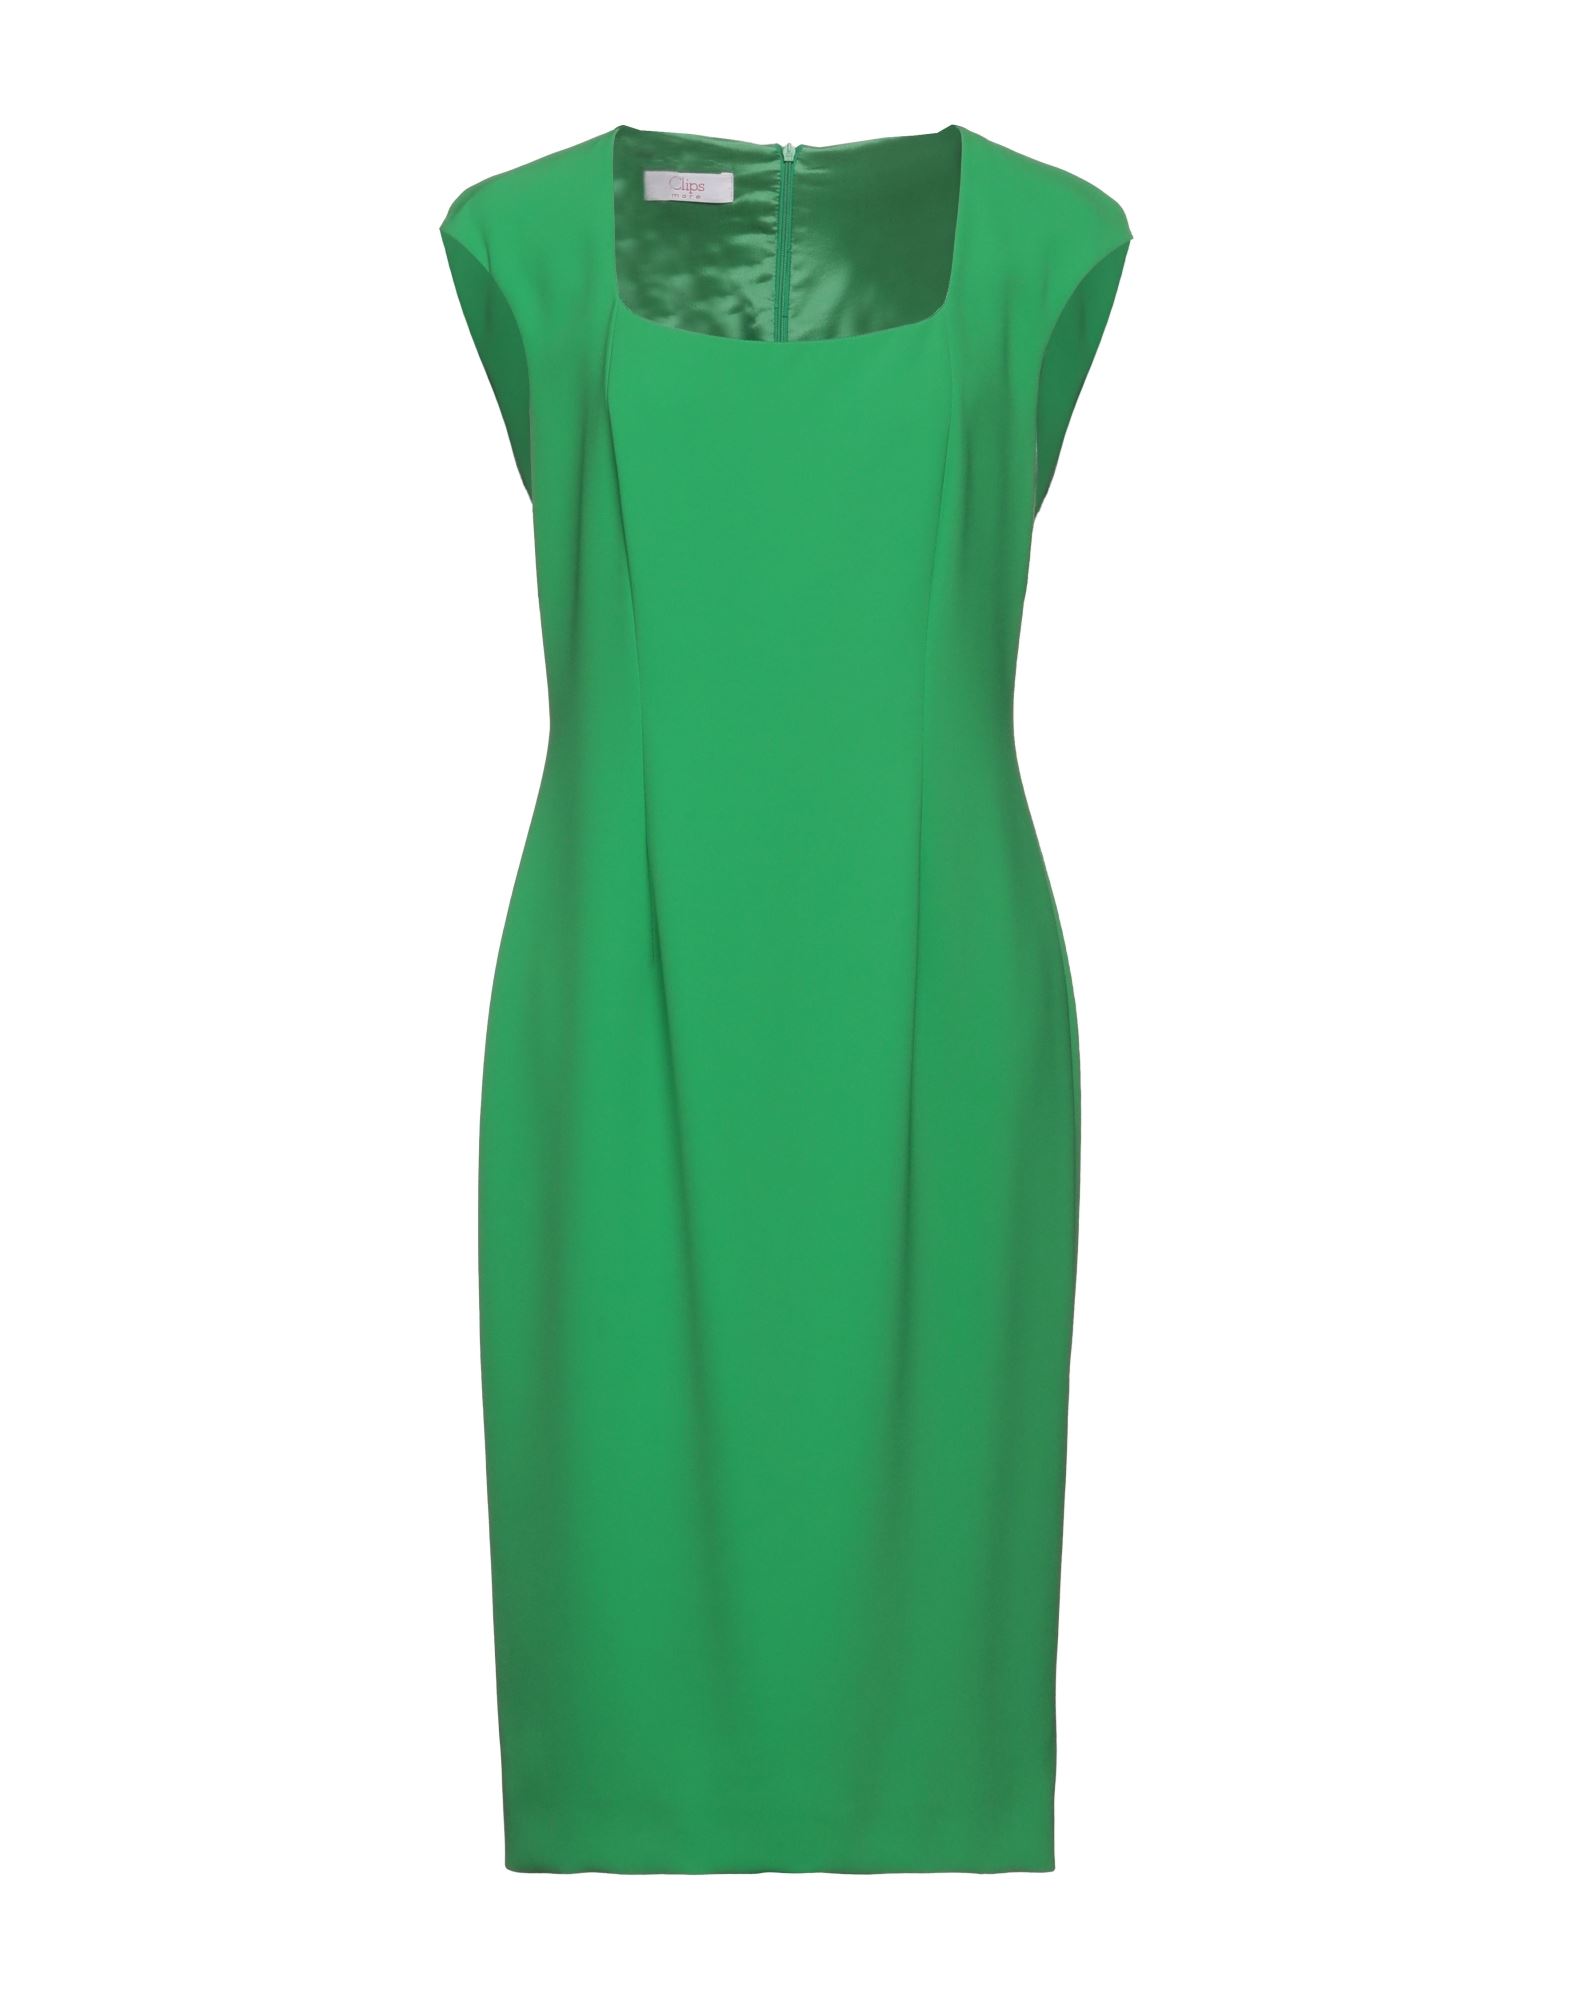 Clips More Midi Dresses In Emerald Green